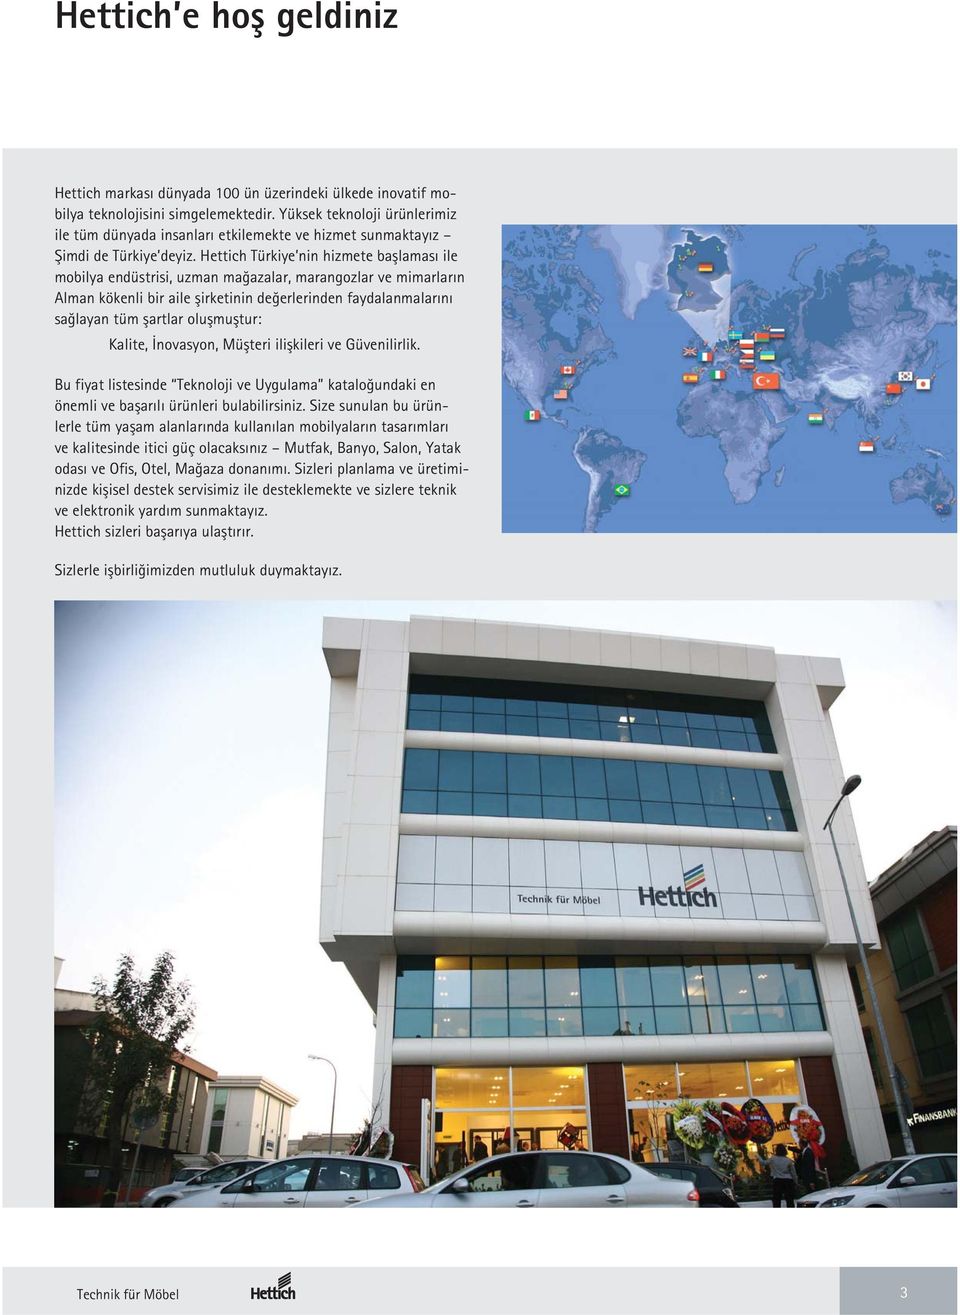 Hettich Türkiye nin hizmete başlaması ile mobilya endüstrisi, uzman mağazalar, marangozlar ve mimarların Alman kökenli bir aile şirketinin değerlerinden faydalanmalarını sağlayan tüm şartlar